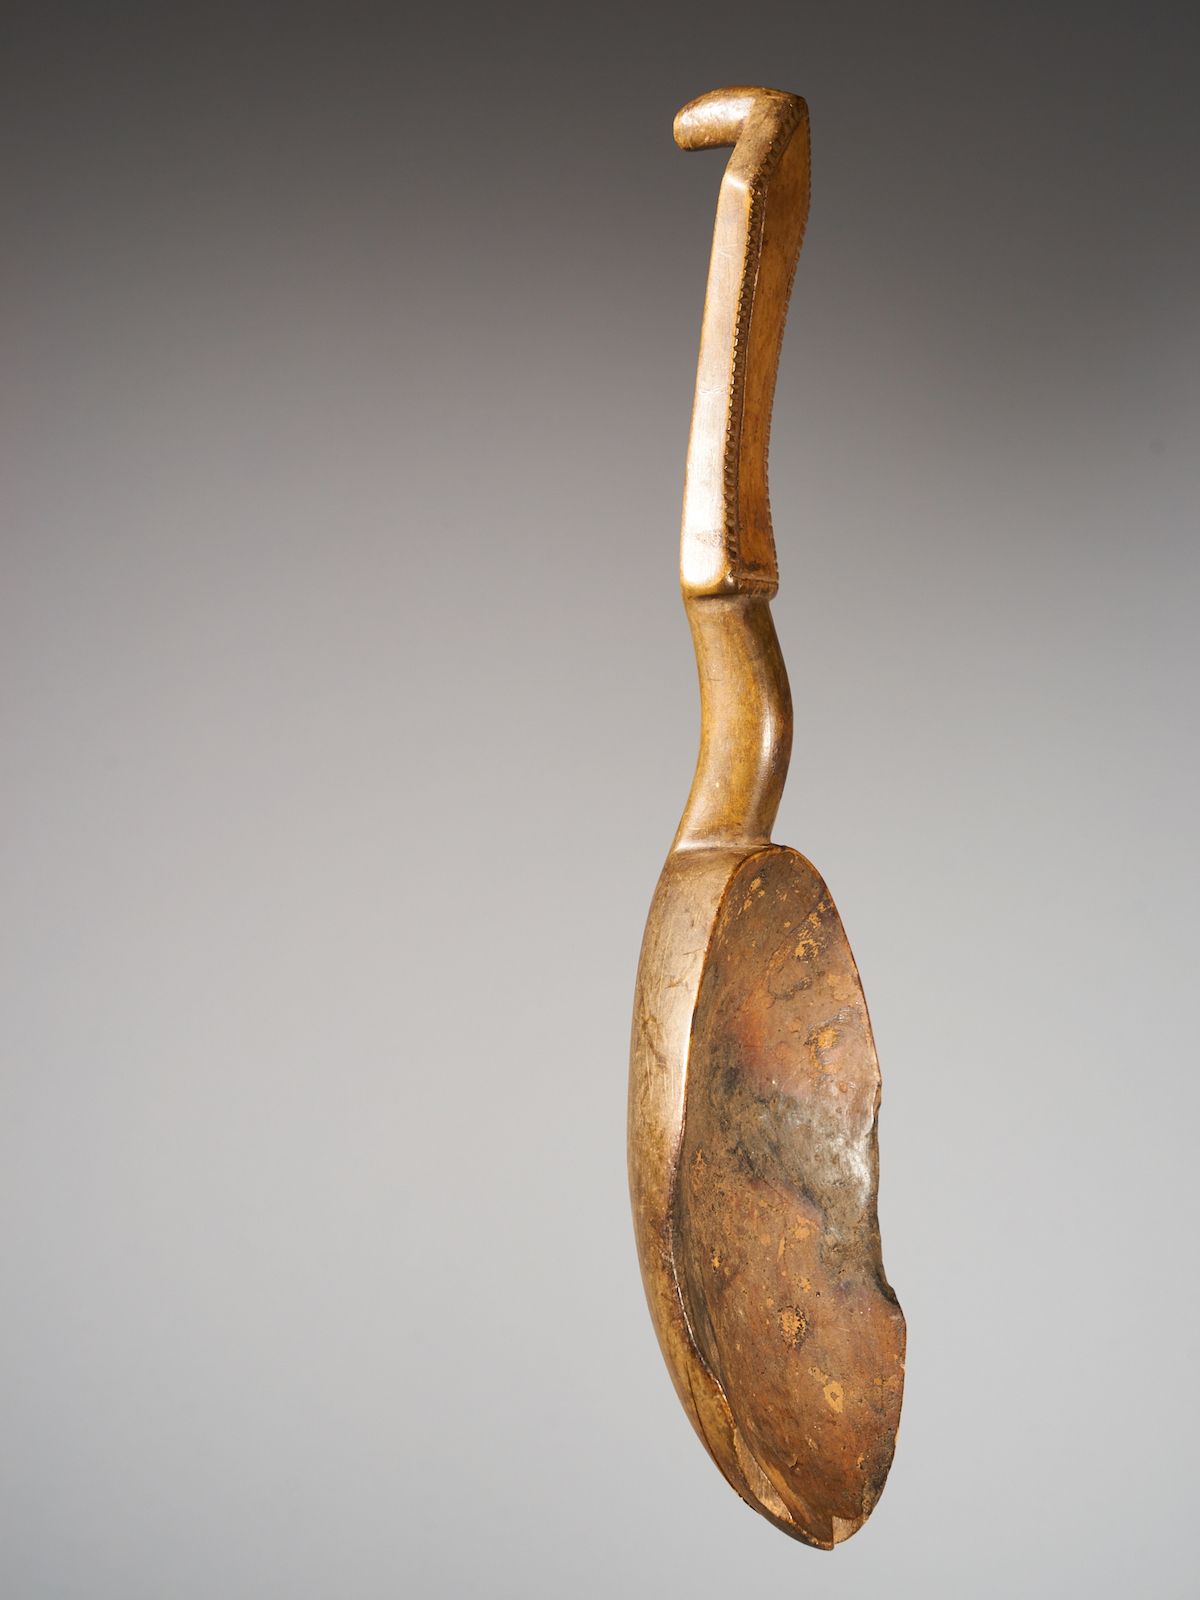 Peuple Baule Decorated Wooden Spoon, Baule People, Ivory Coast, interbellum - 33&hellip;